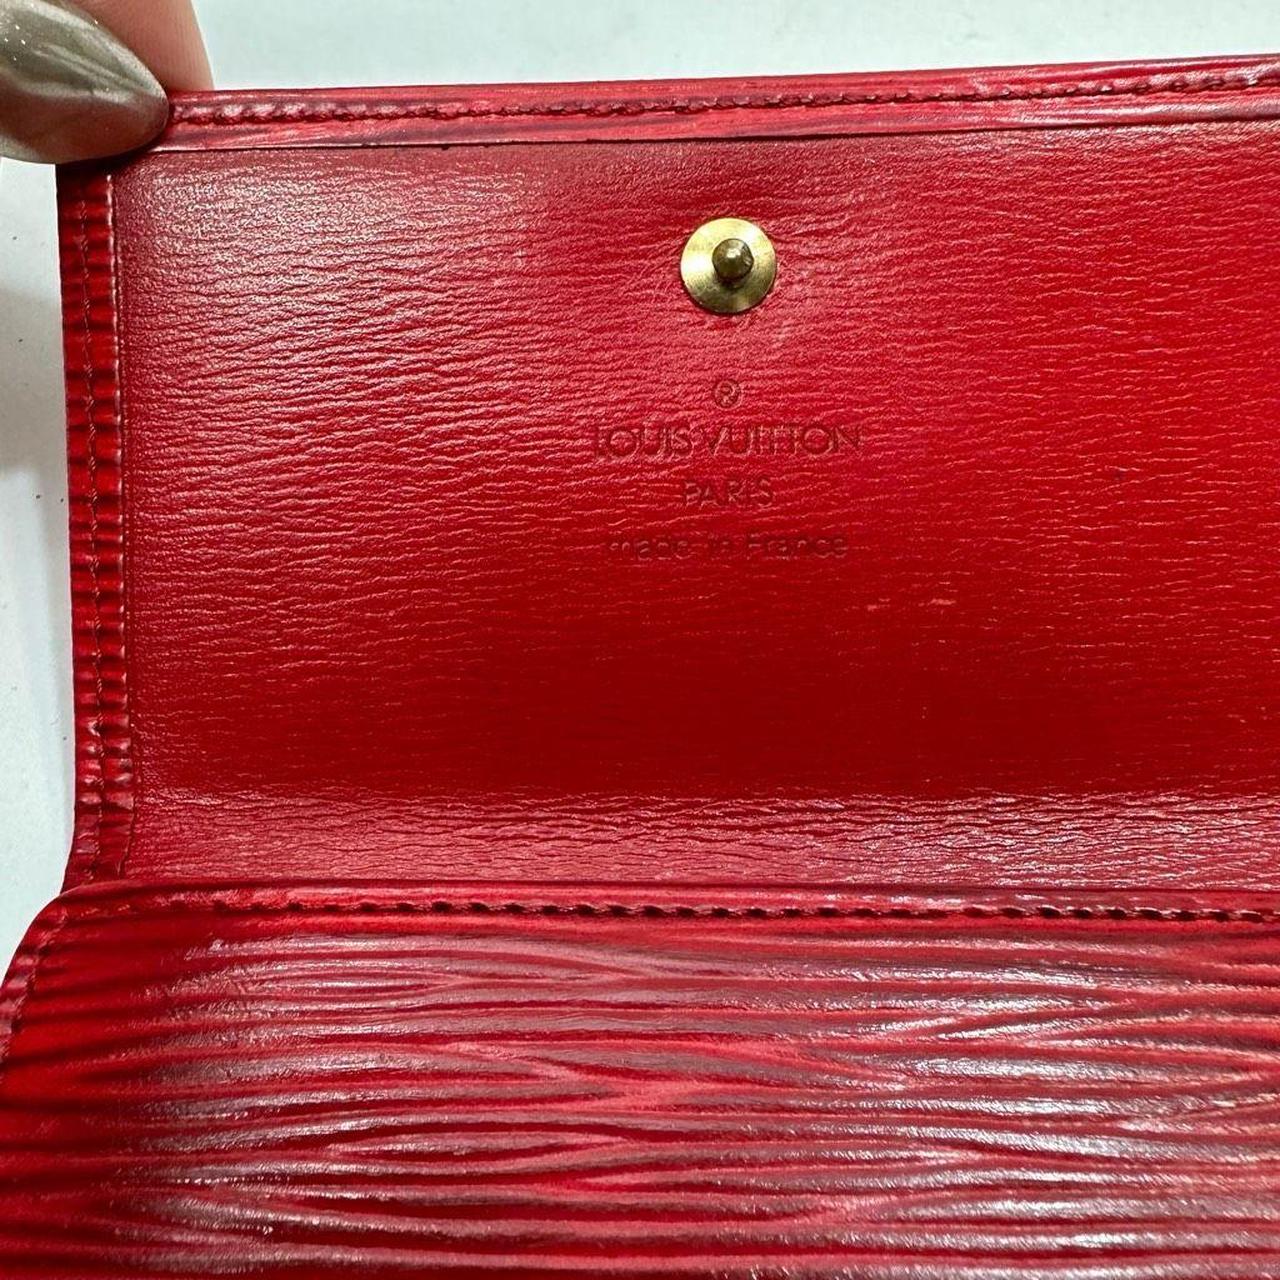 Vintage Louis Vuitton Porte Billets Compact Wallet - Depop